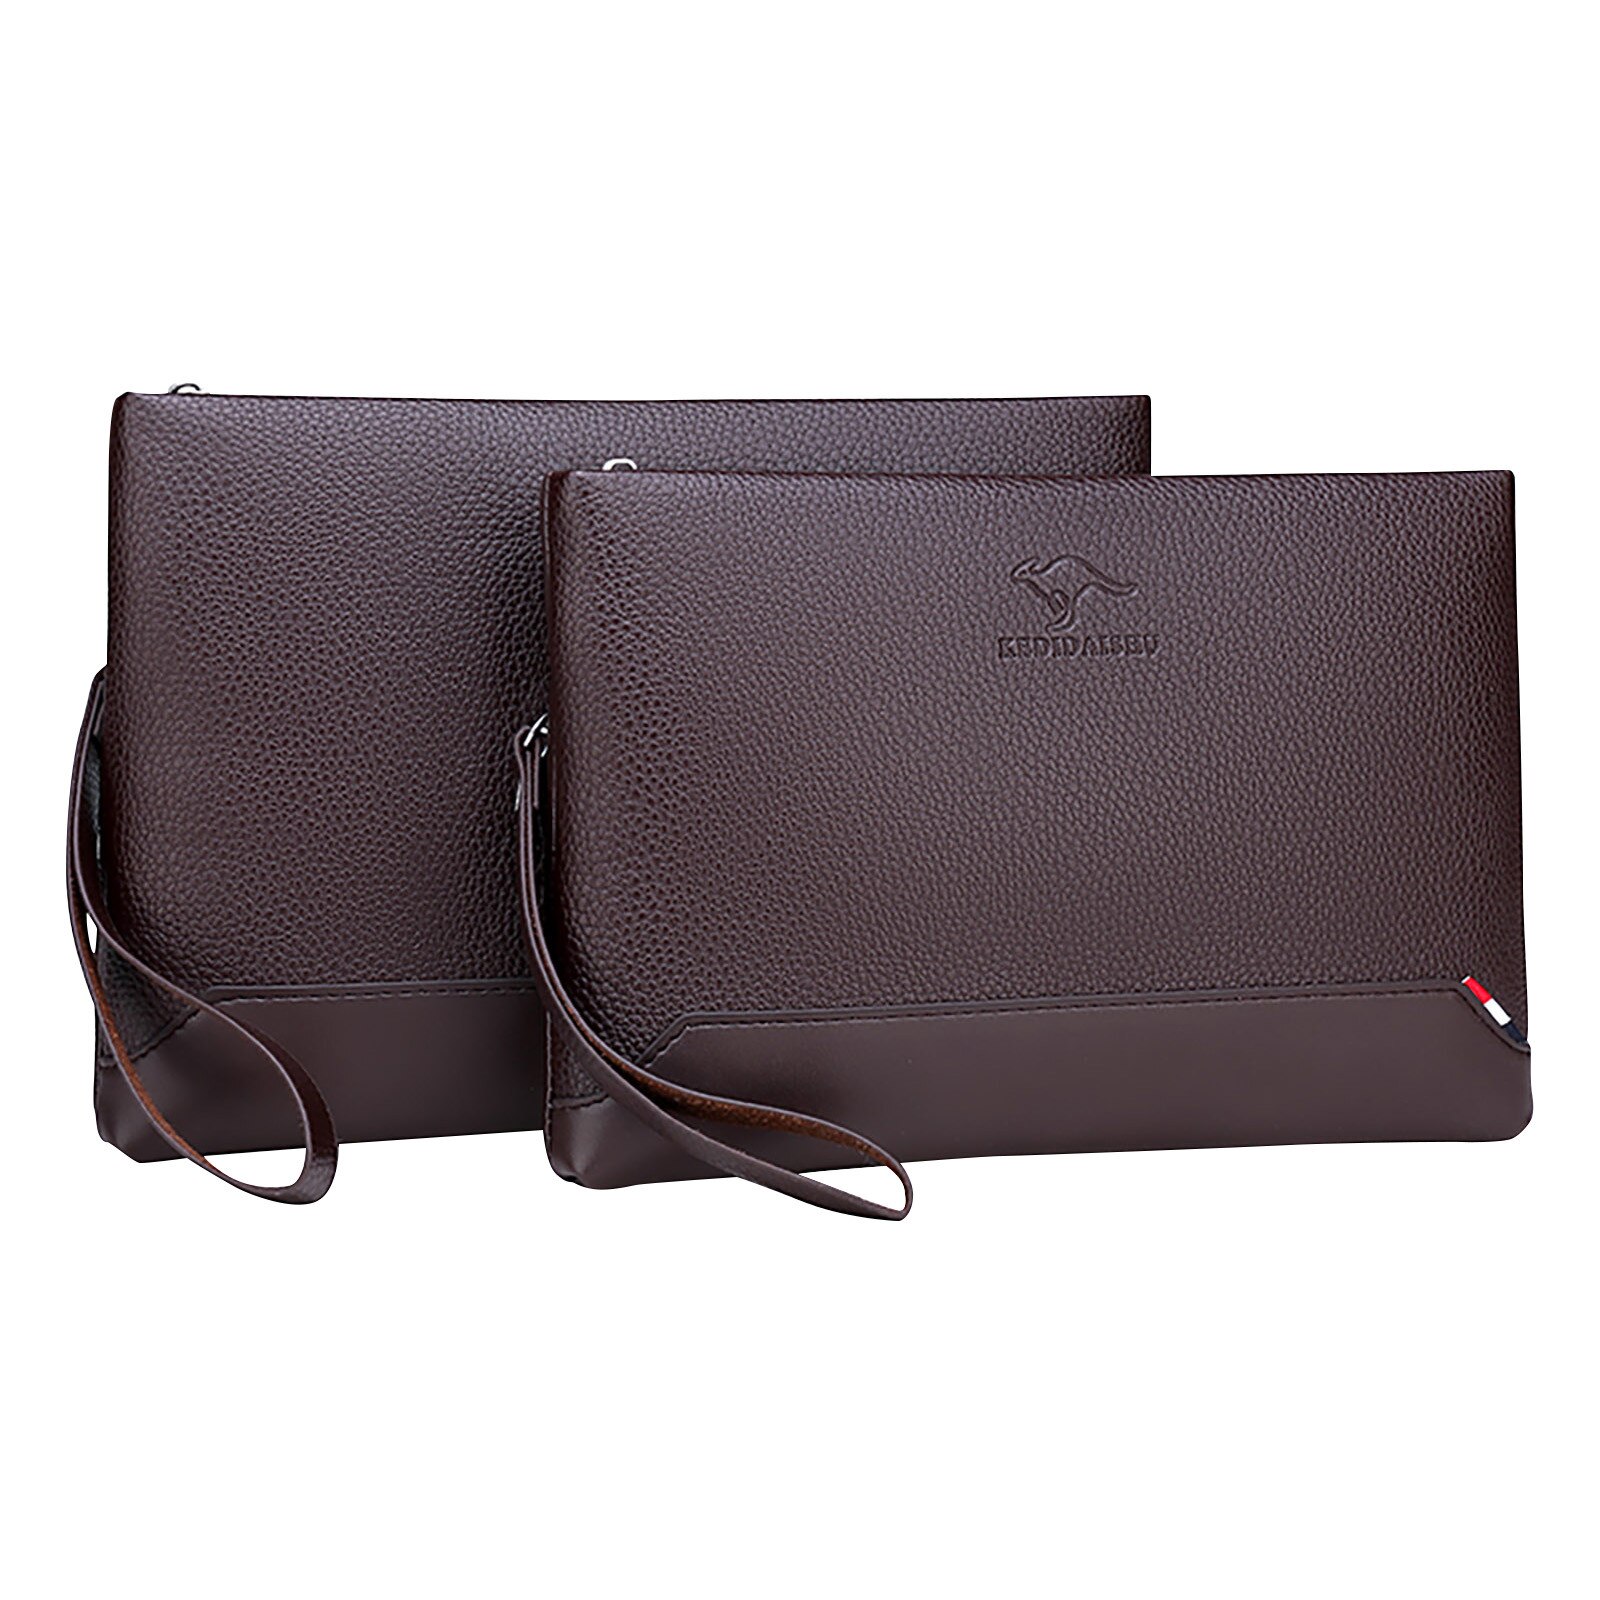 Mandlig tegnebog konvolut clutch læder clutch tasker afslappet stor kapacitet håndtasker til mand to koder valgfri #g30